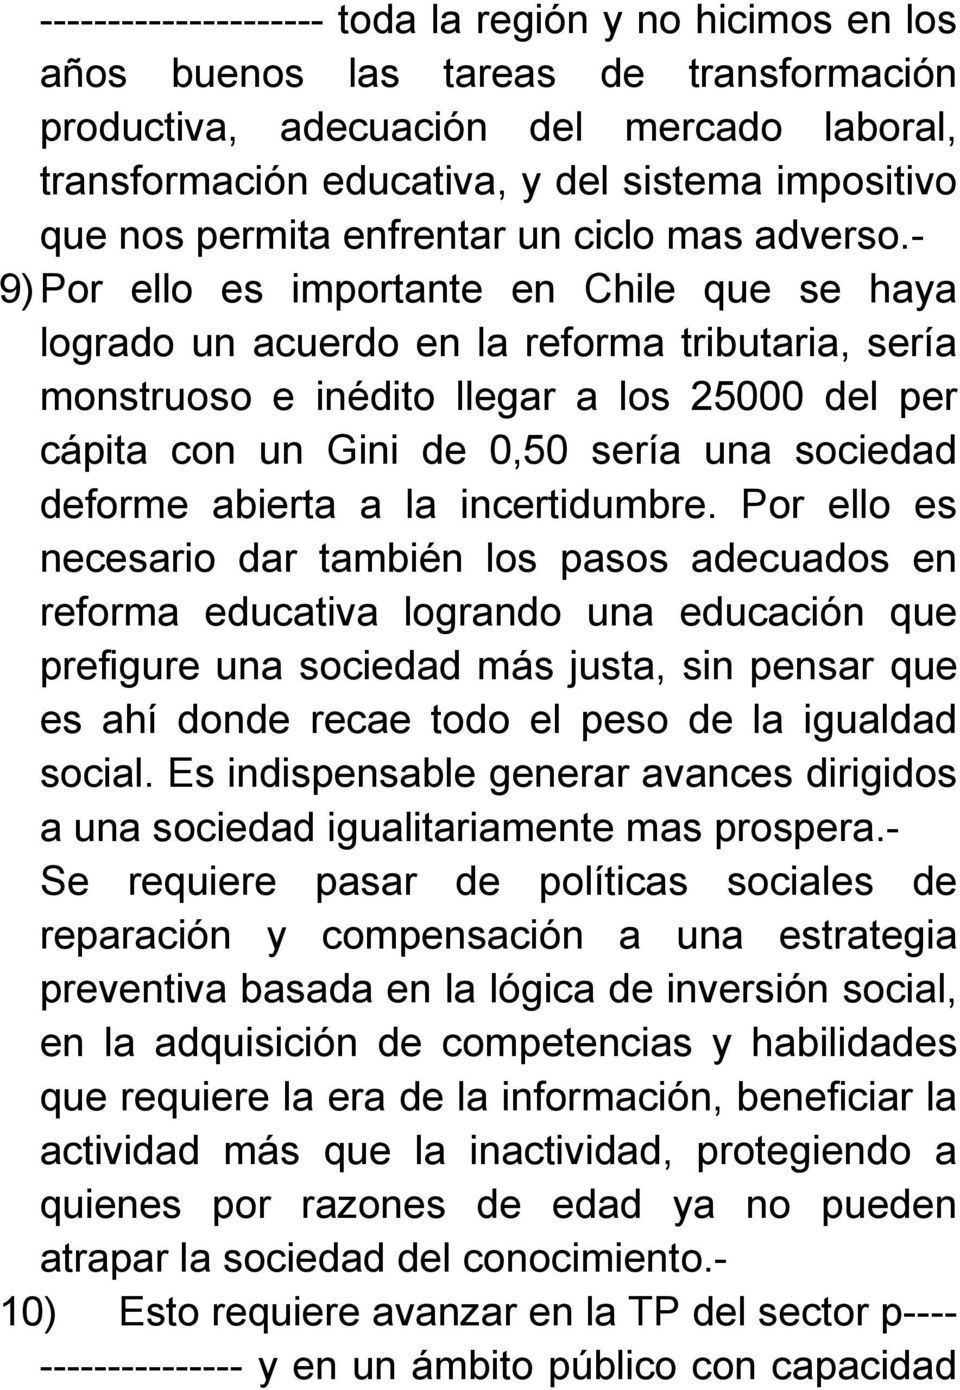 - 9) Por ello es importante en Chile que se haya logrado un acuerdo en la reforma tributaria, sería monstruoso e inédito llegar a los 25000 del per cápita con un Gini de 0,50 sería una sociedad